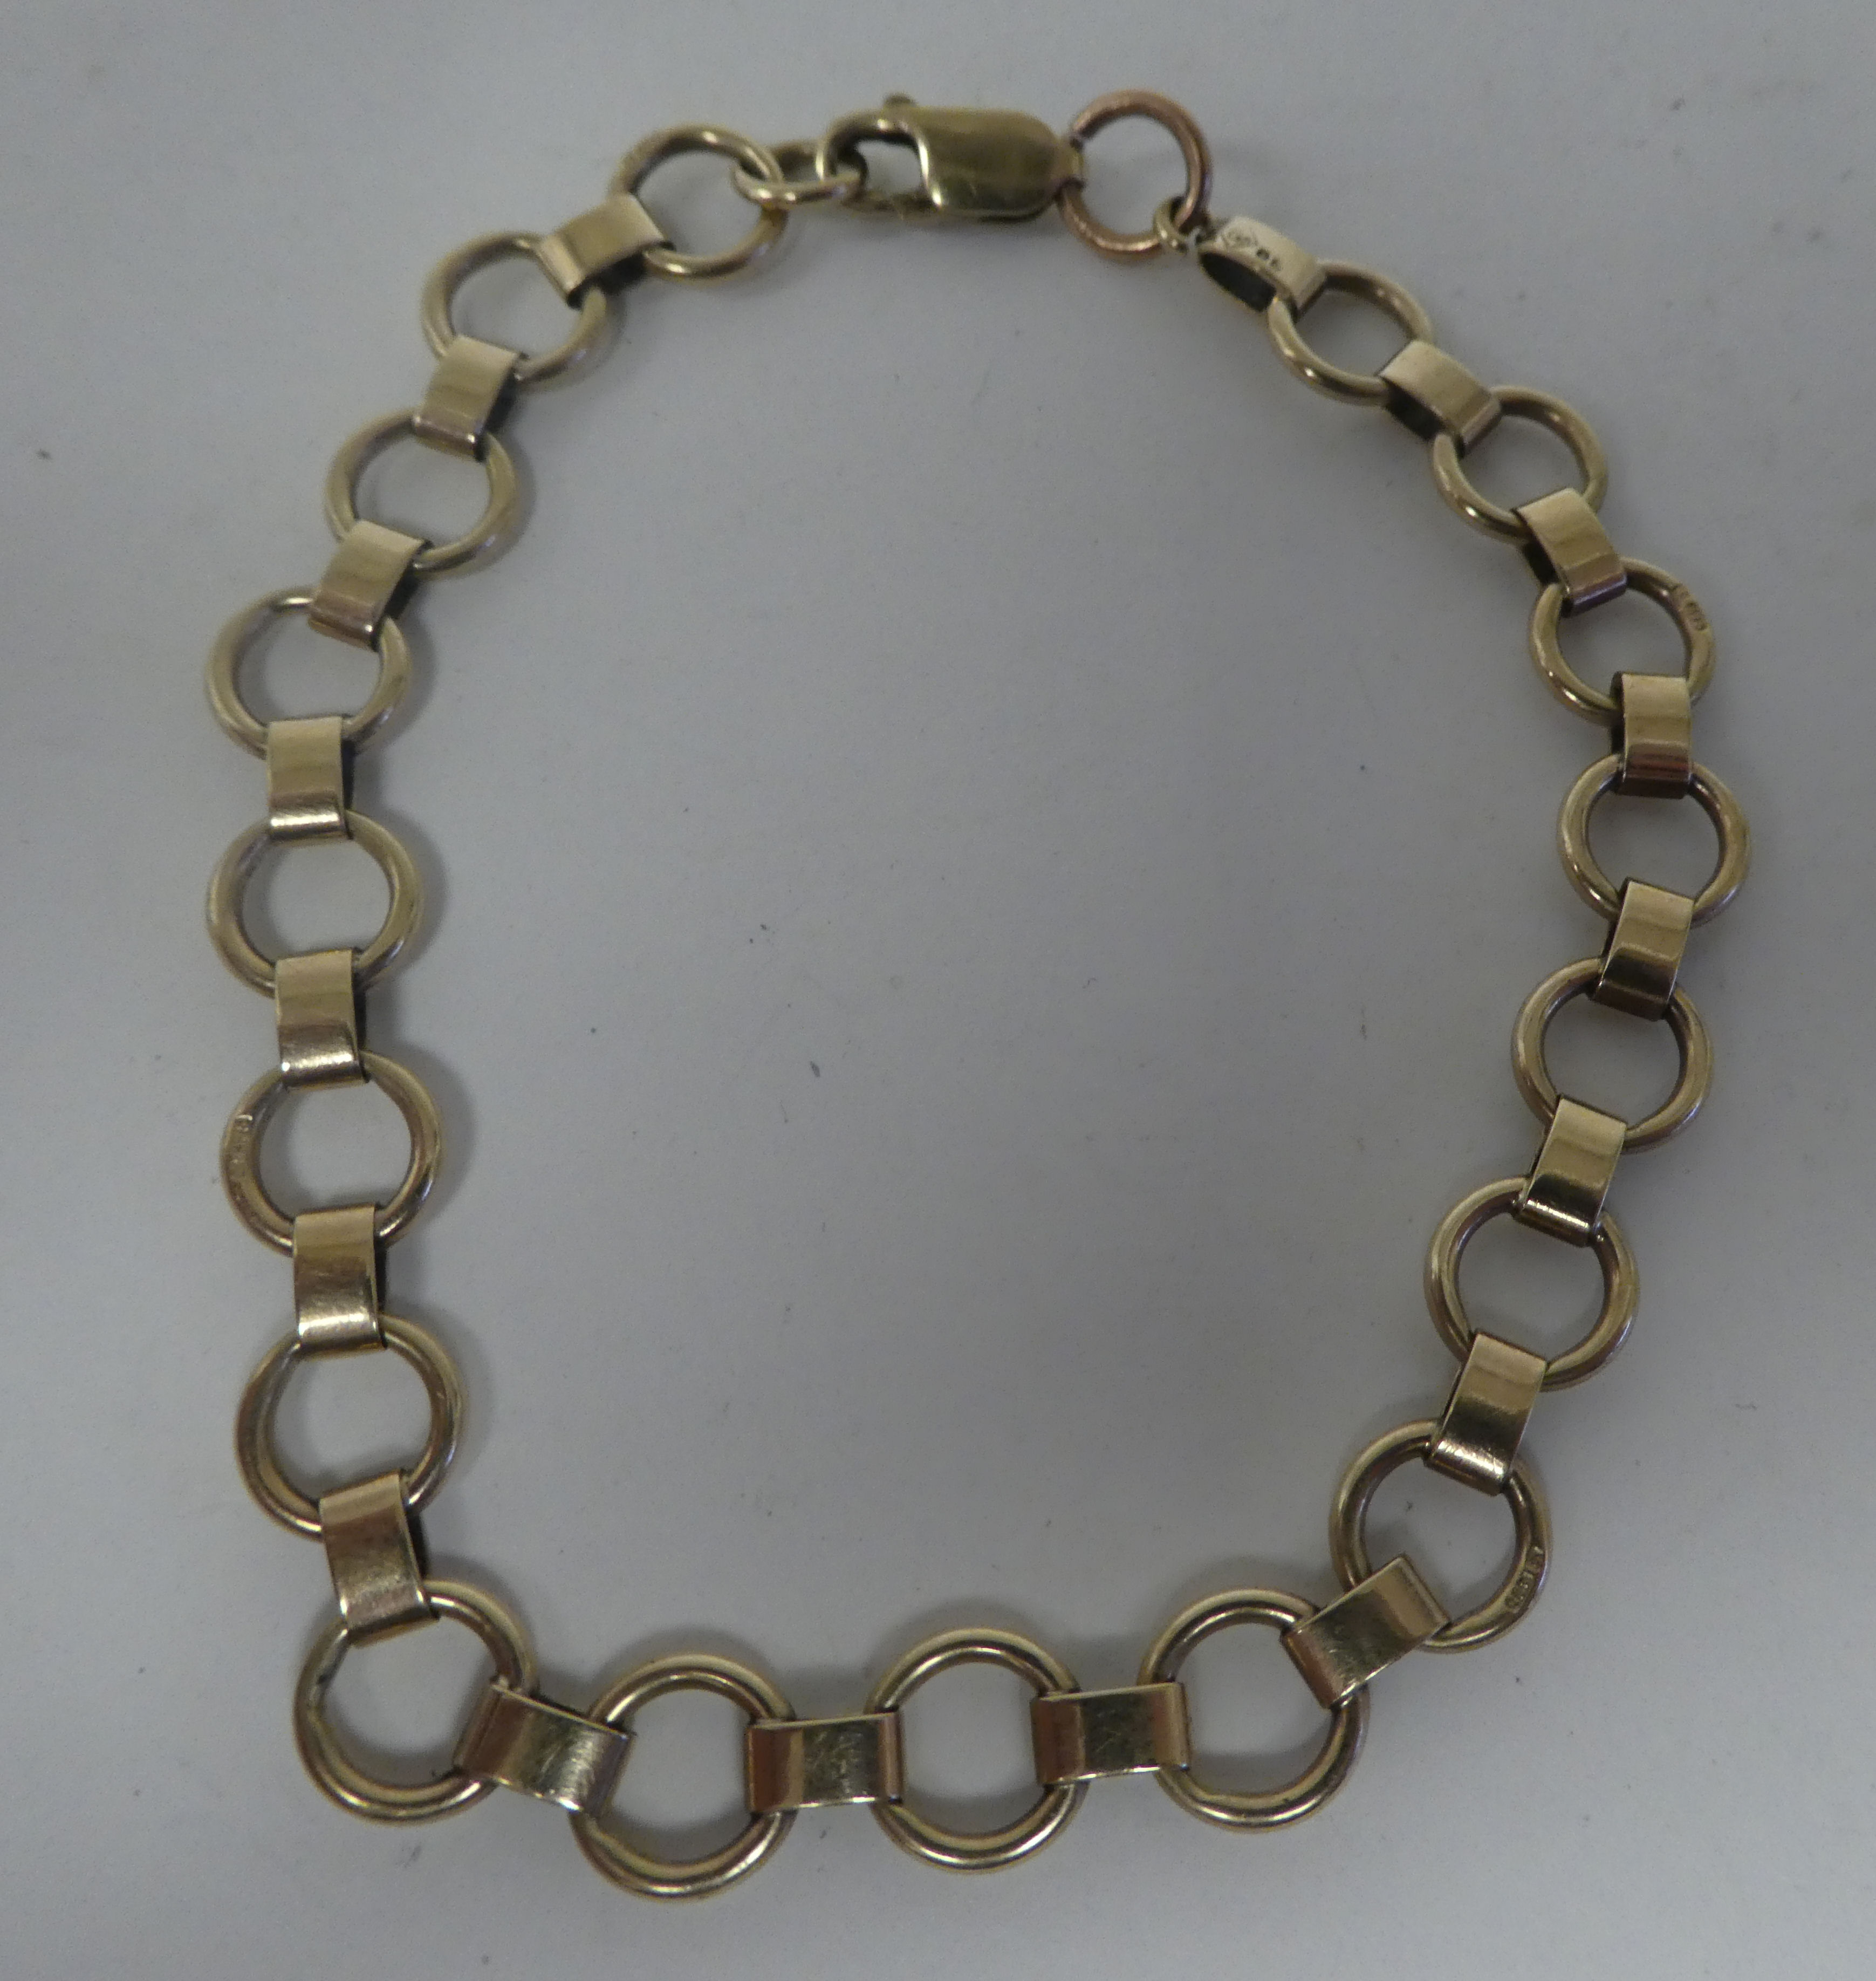 A gold coloured metal ring link bracelet